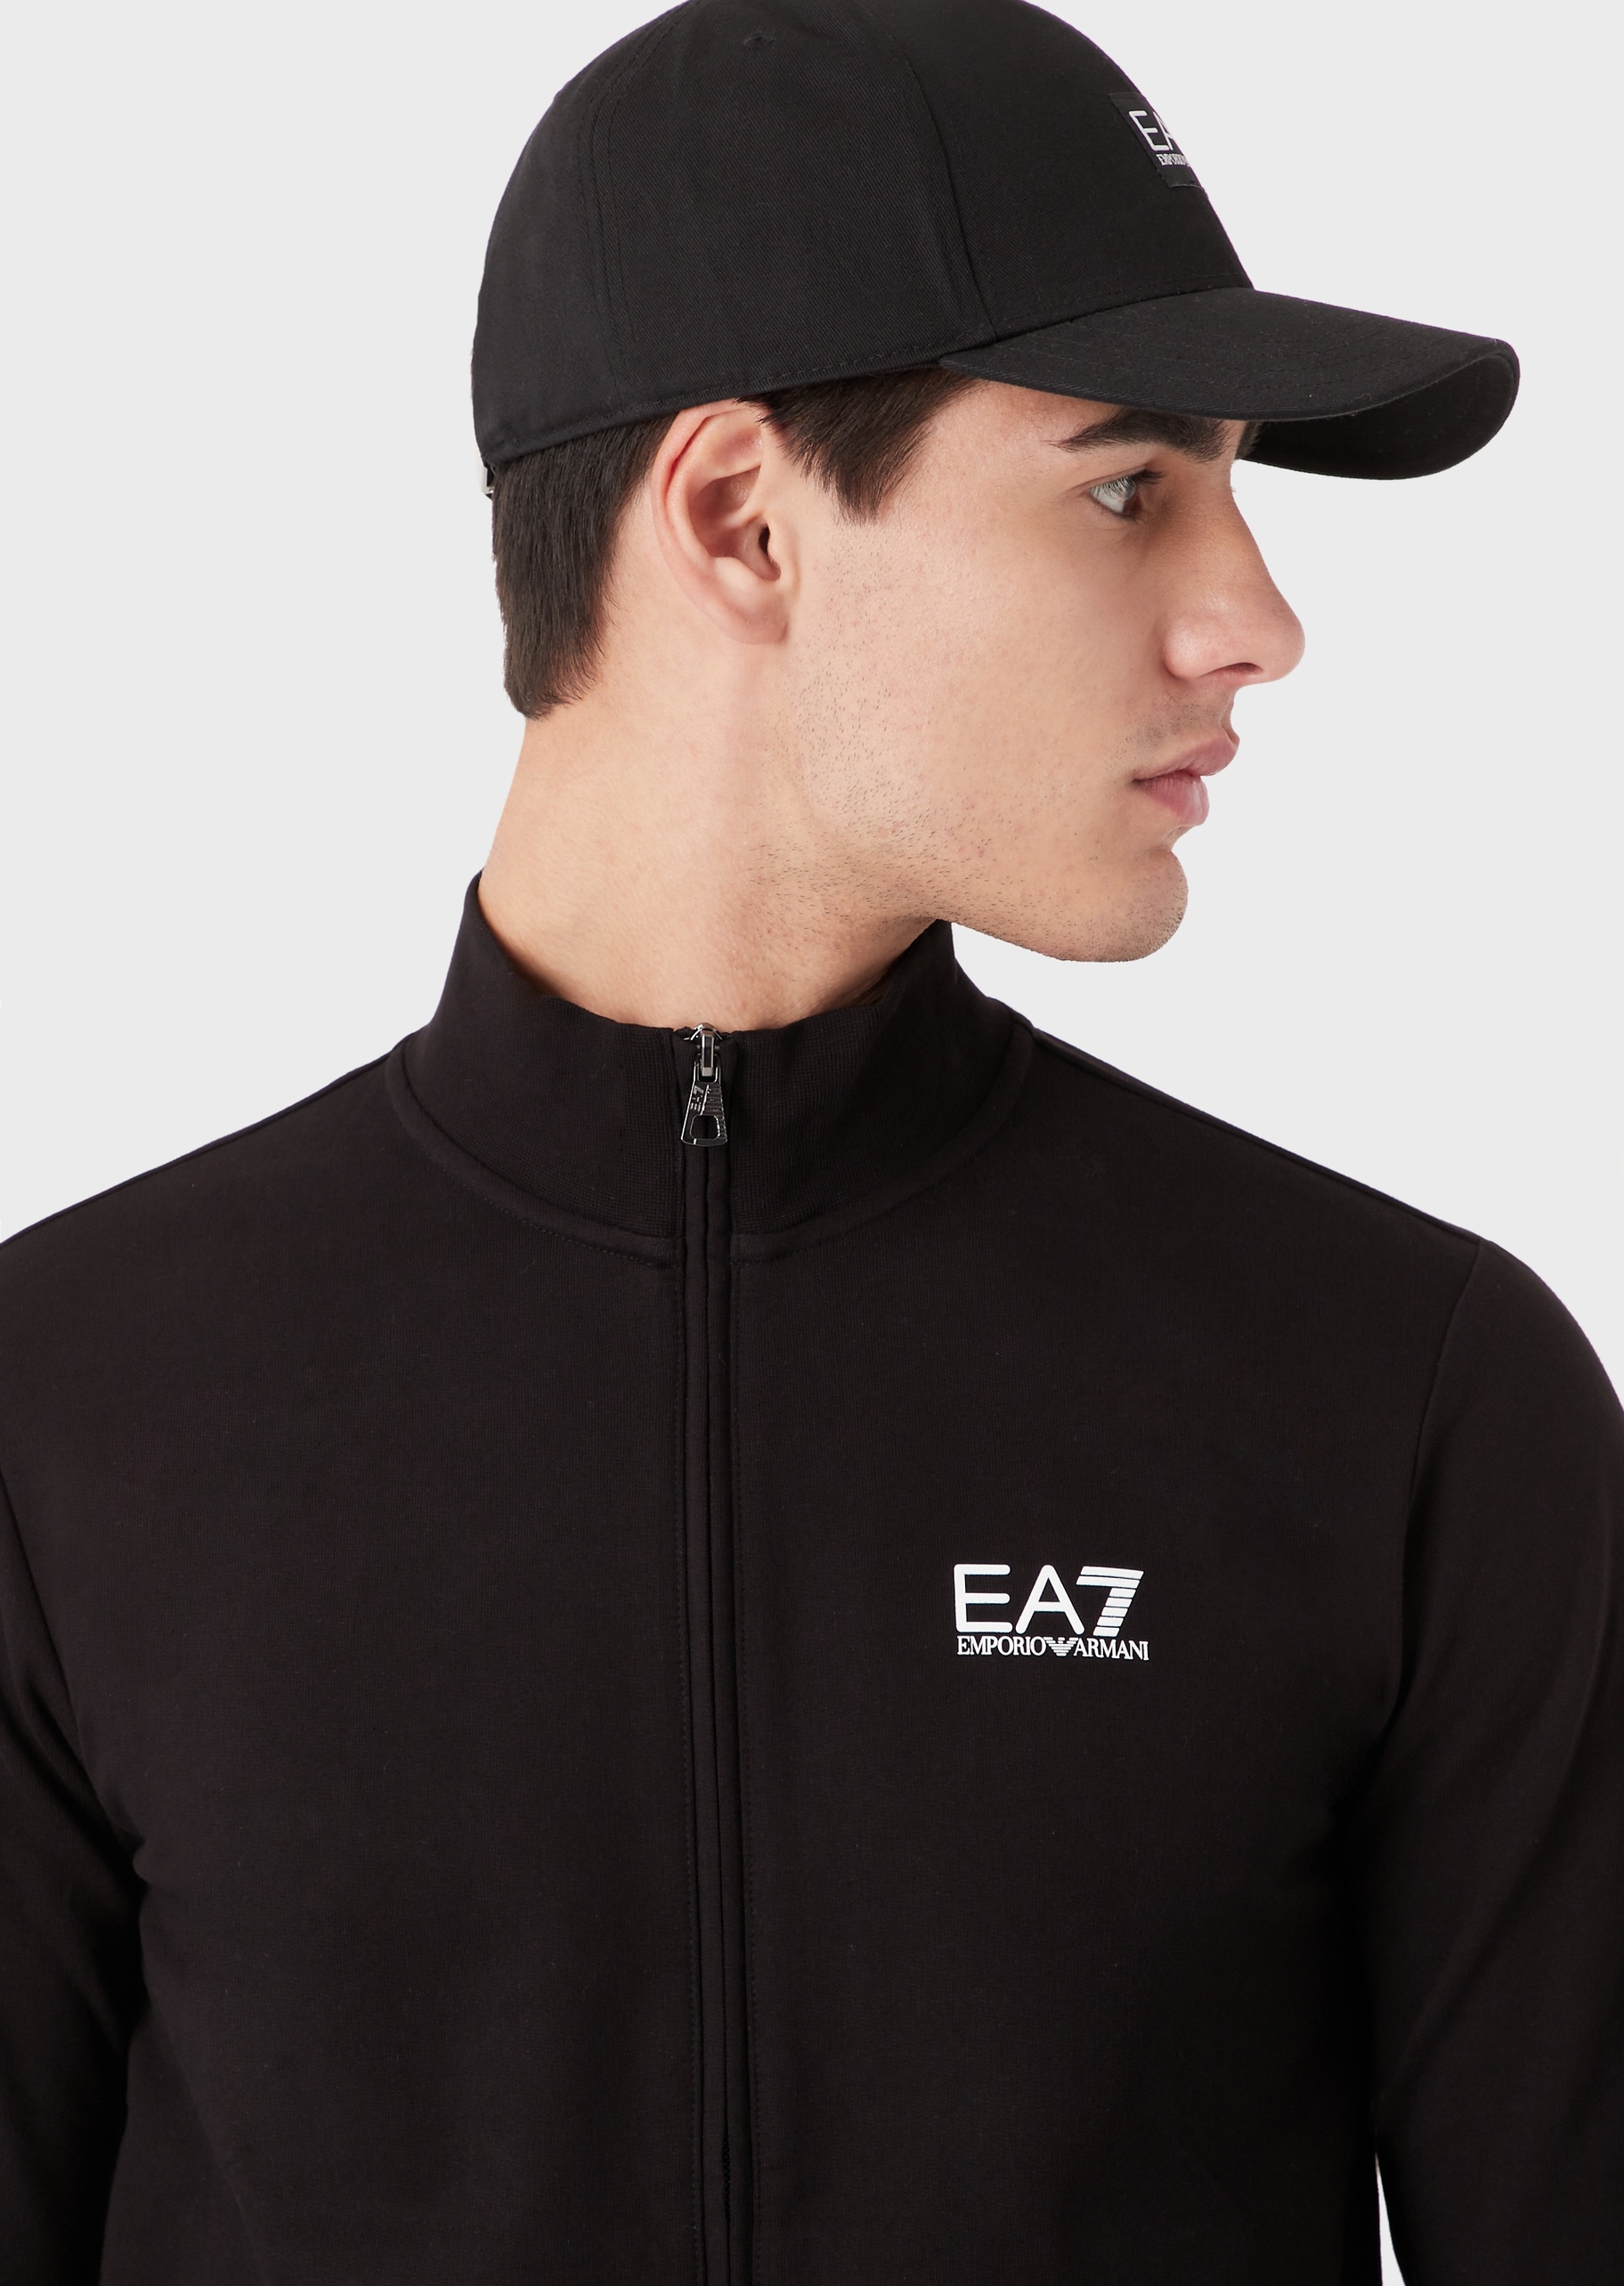 EA7 男士全棉合身长袖立领拉链健身训练卫衣外套